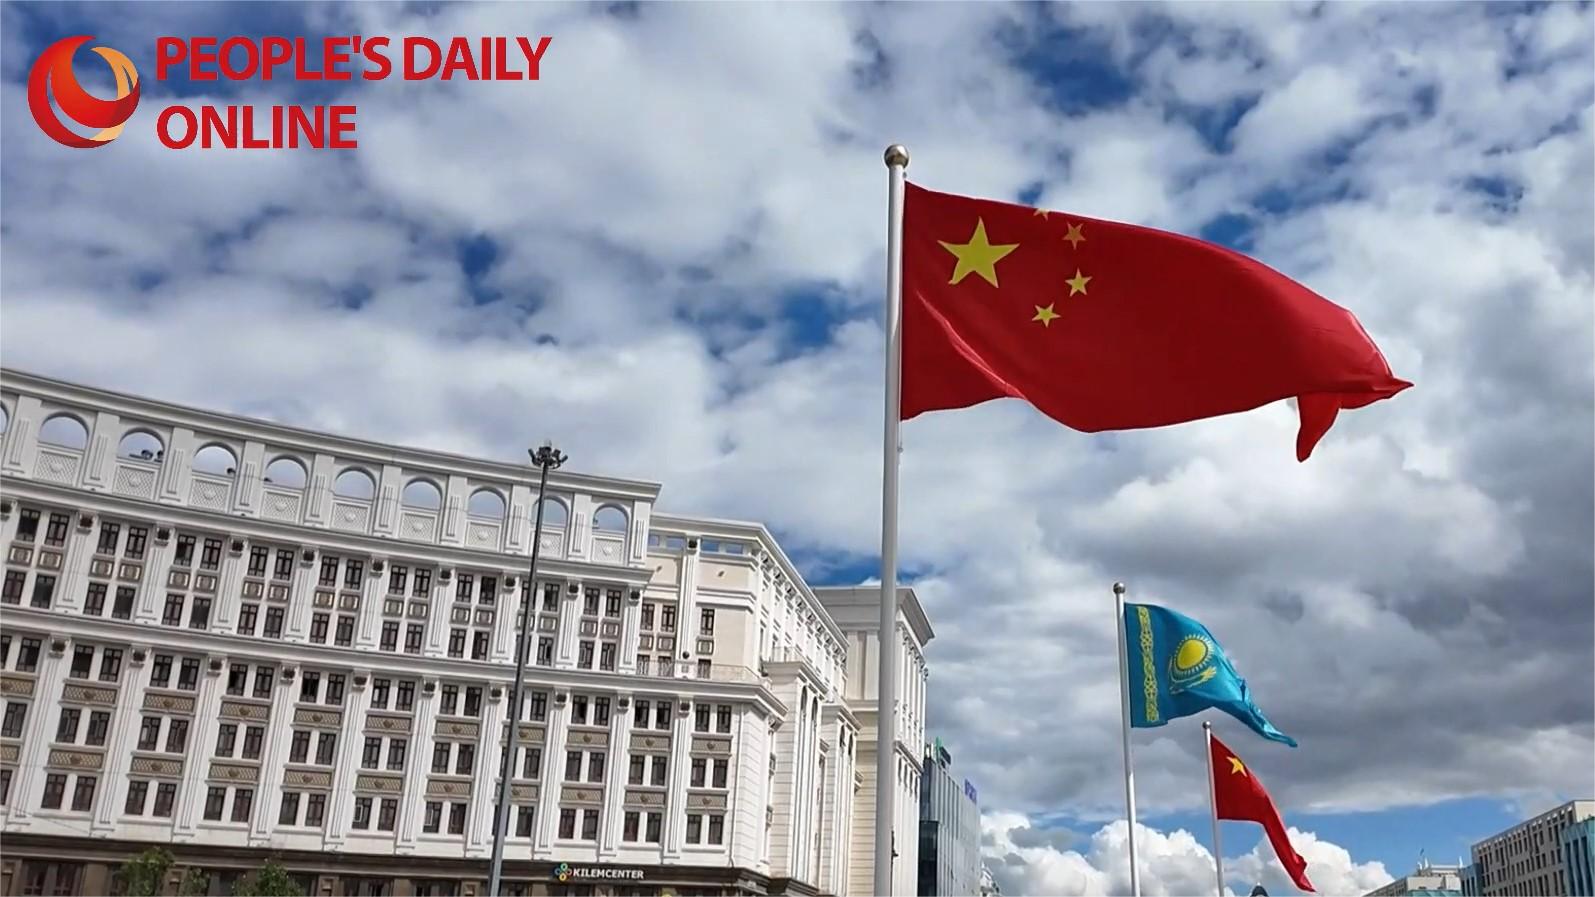 Kazakh experts eye expanding cooperation under SCO